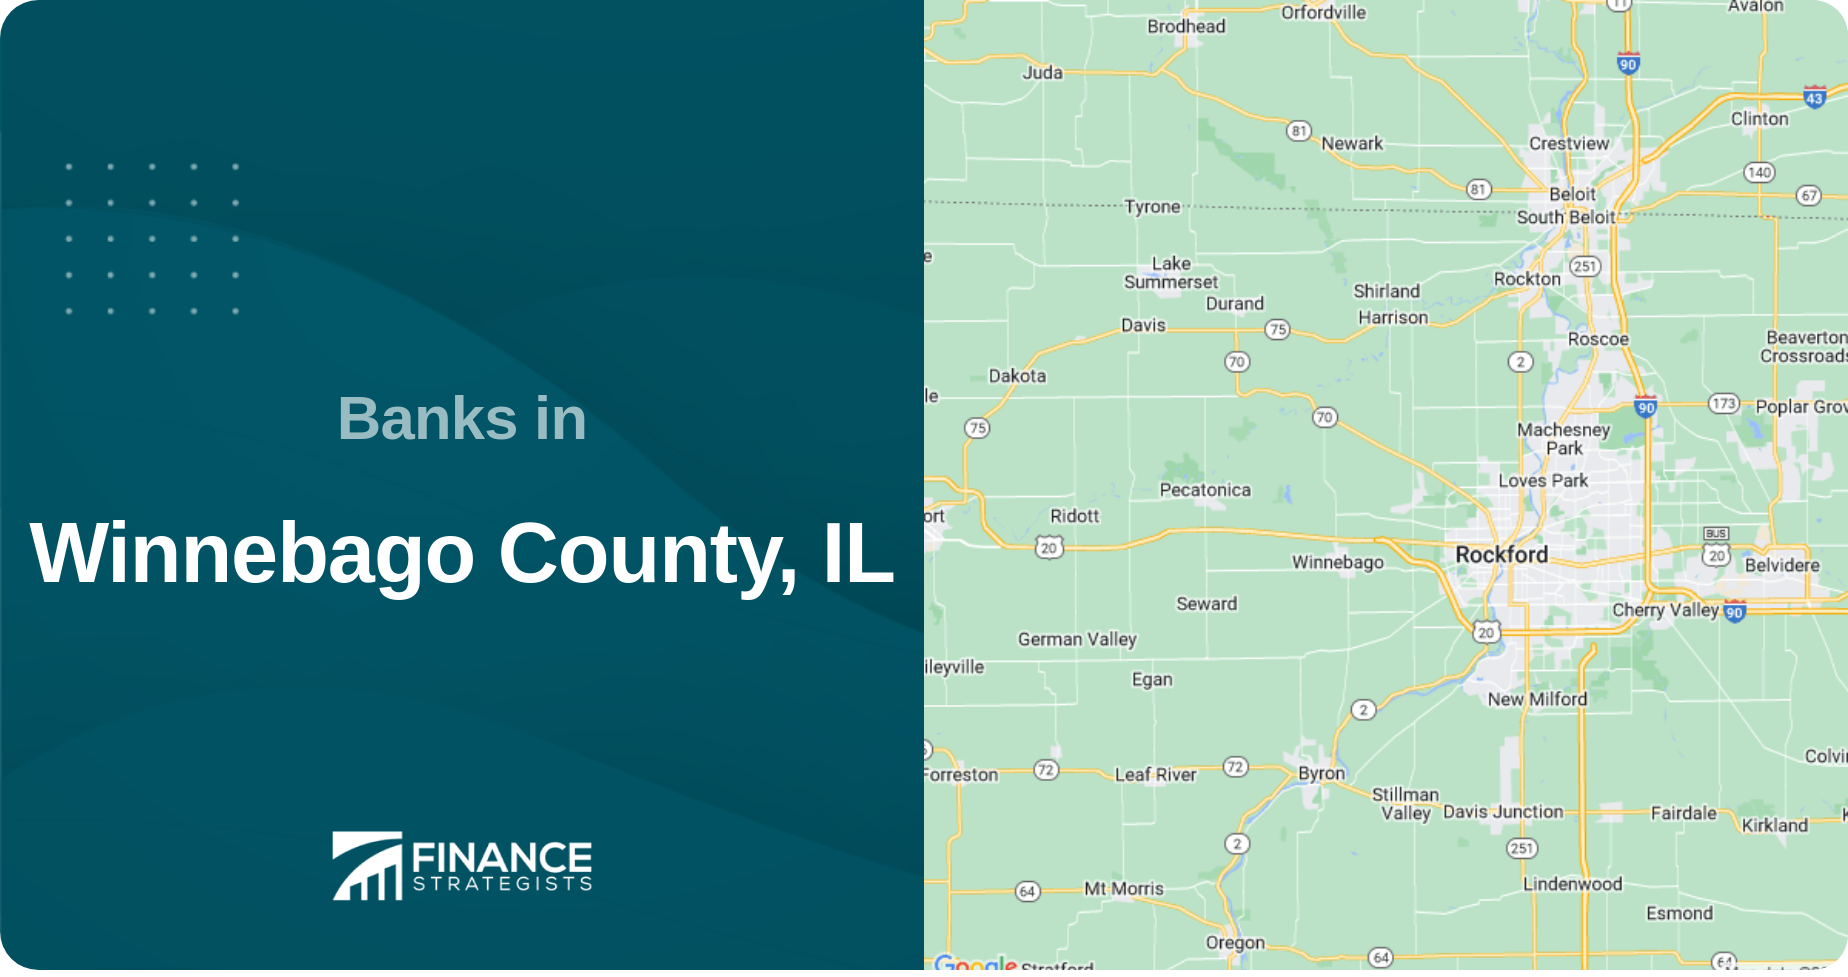 Banks in Winnebago County, IL